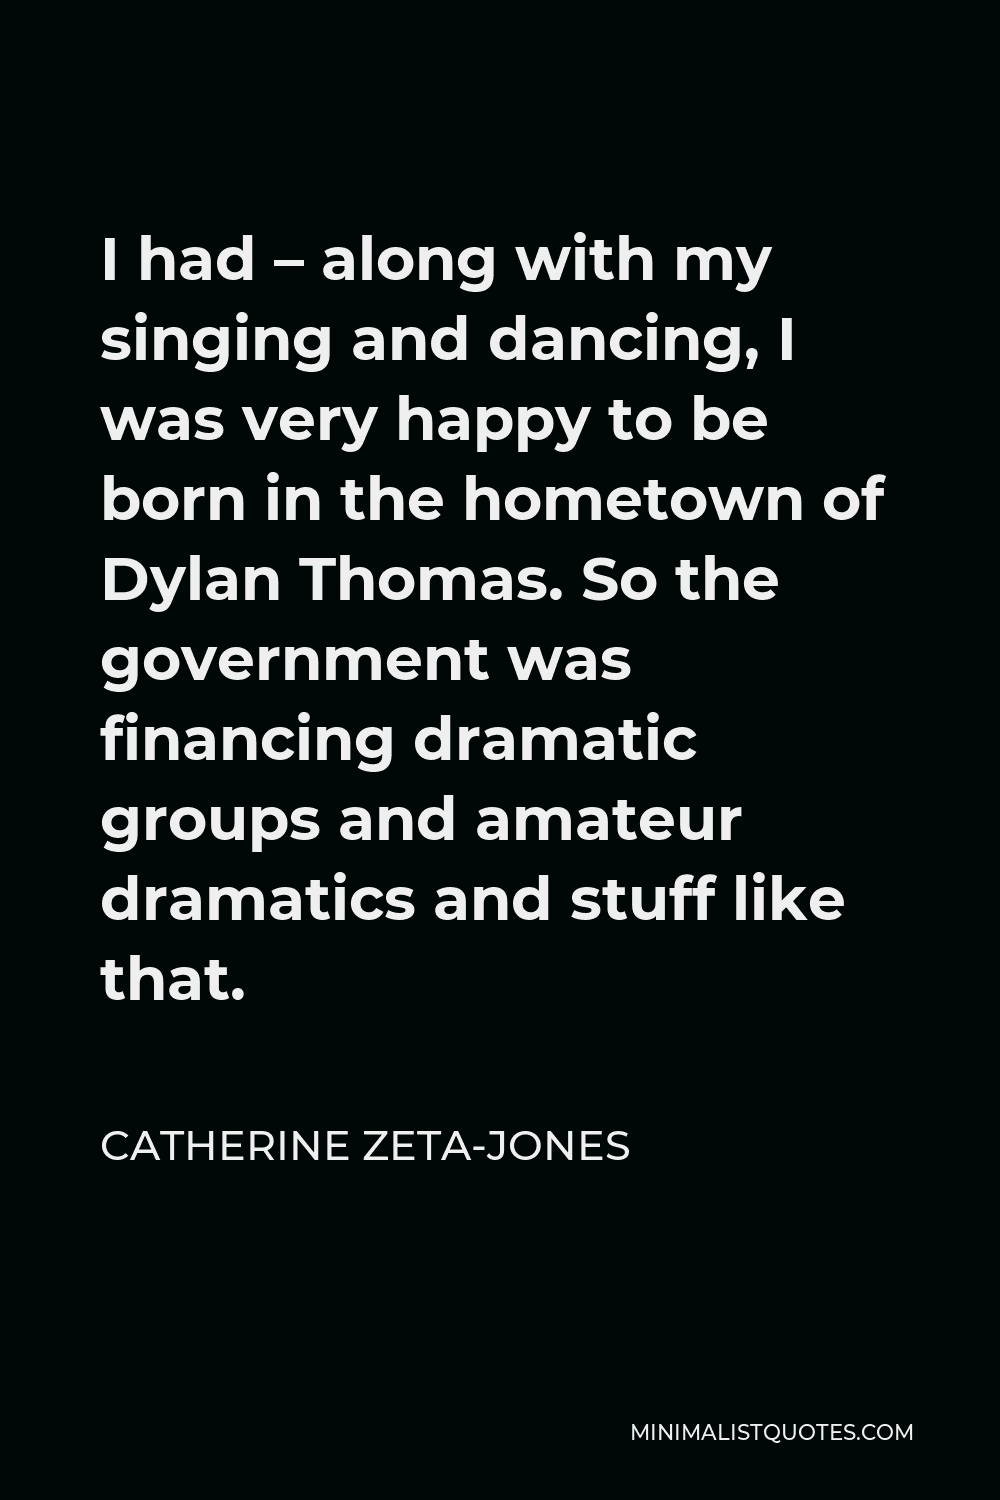 Catherine Zeta-Jones Quotes Minimalist